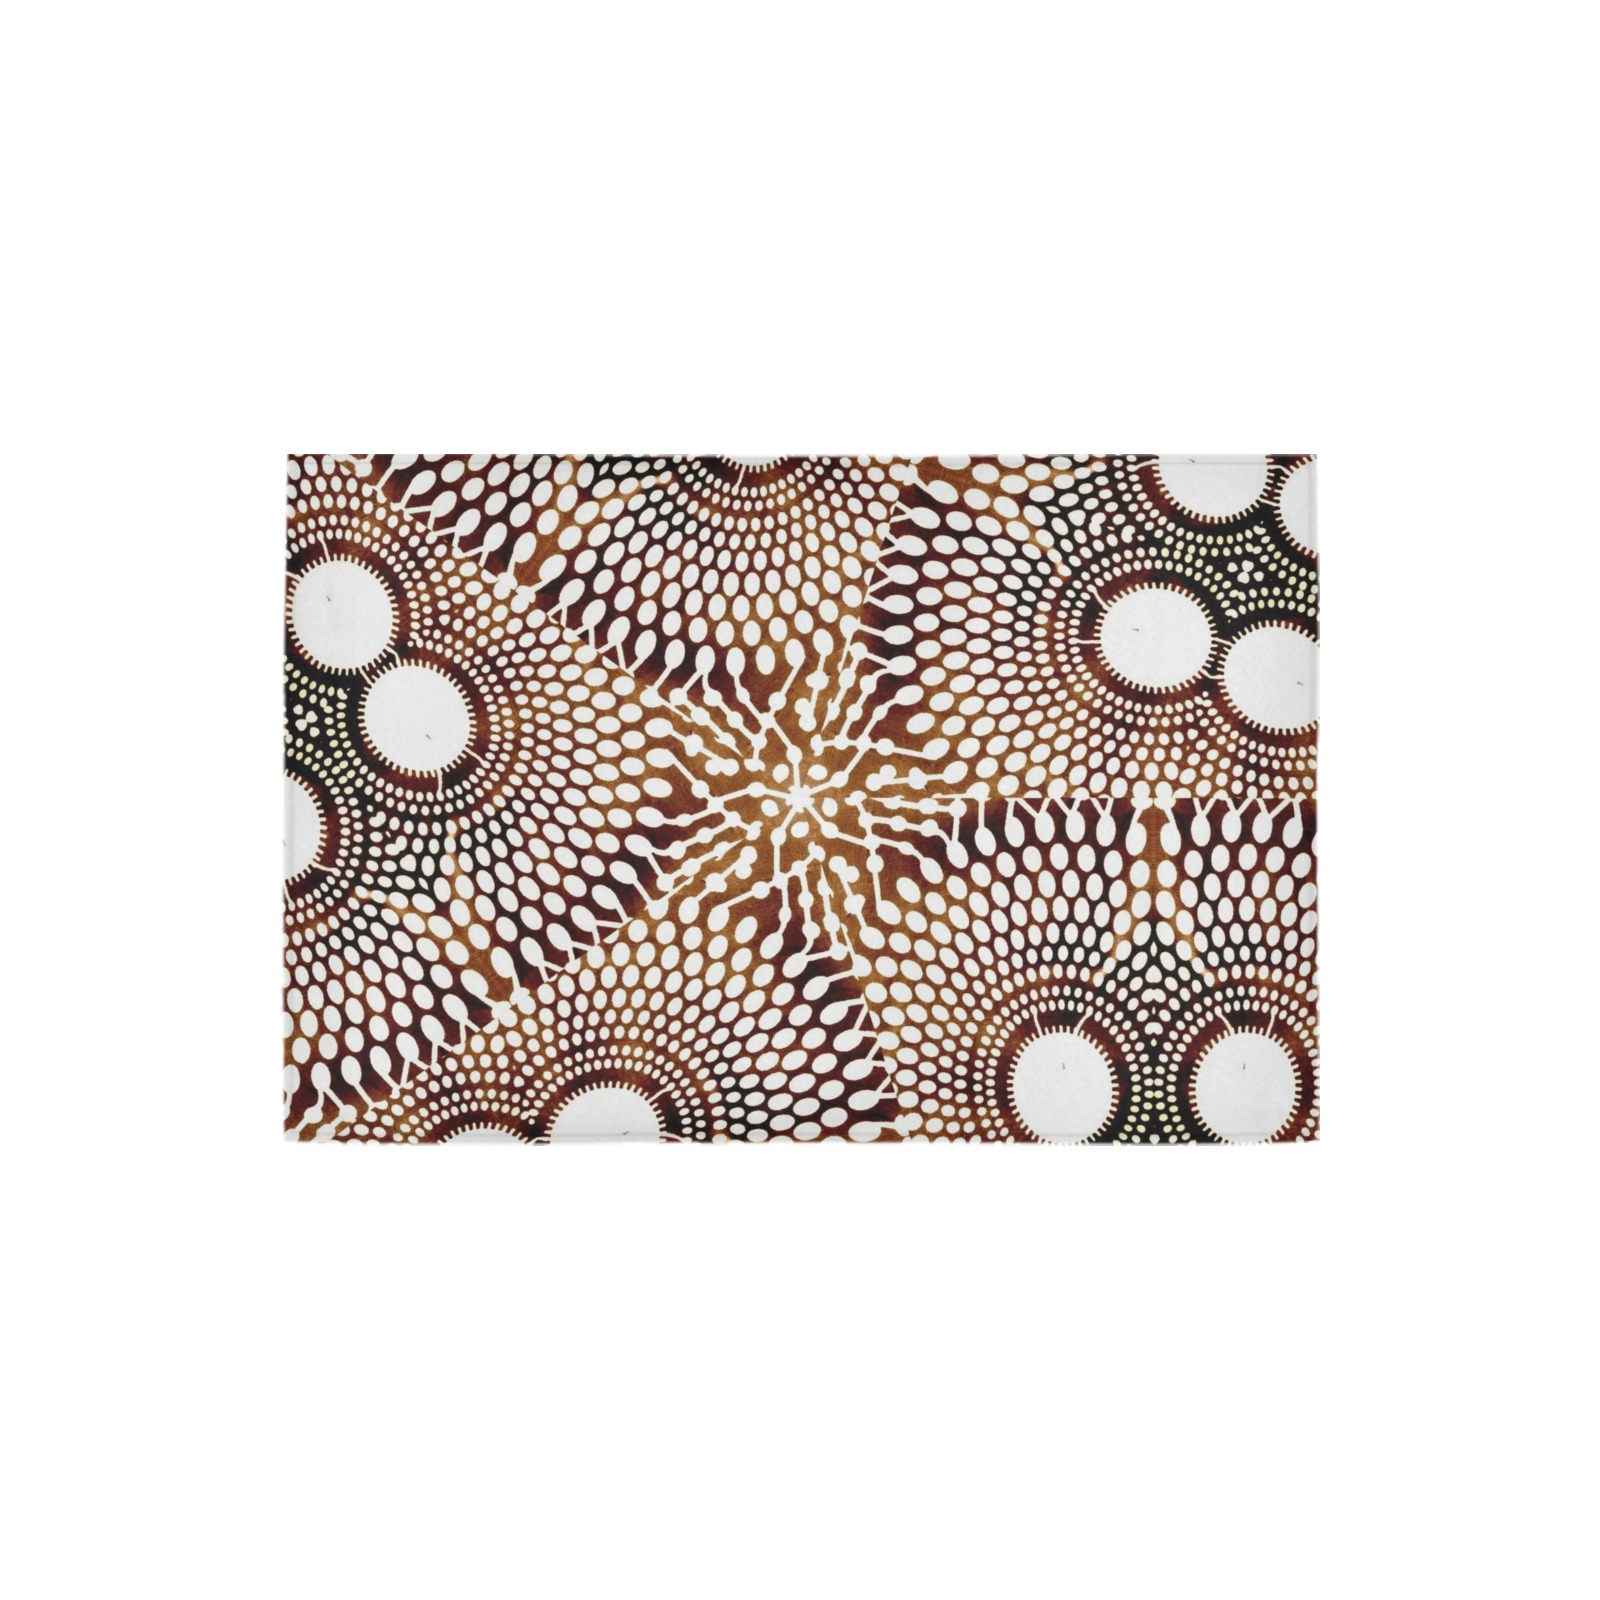 AFRICAN PRINT PATTERN 4 Azalea Doormat 24" x 16" (Sponge Material)